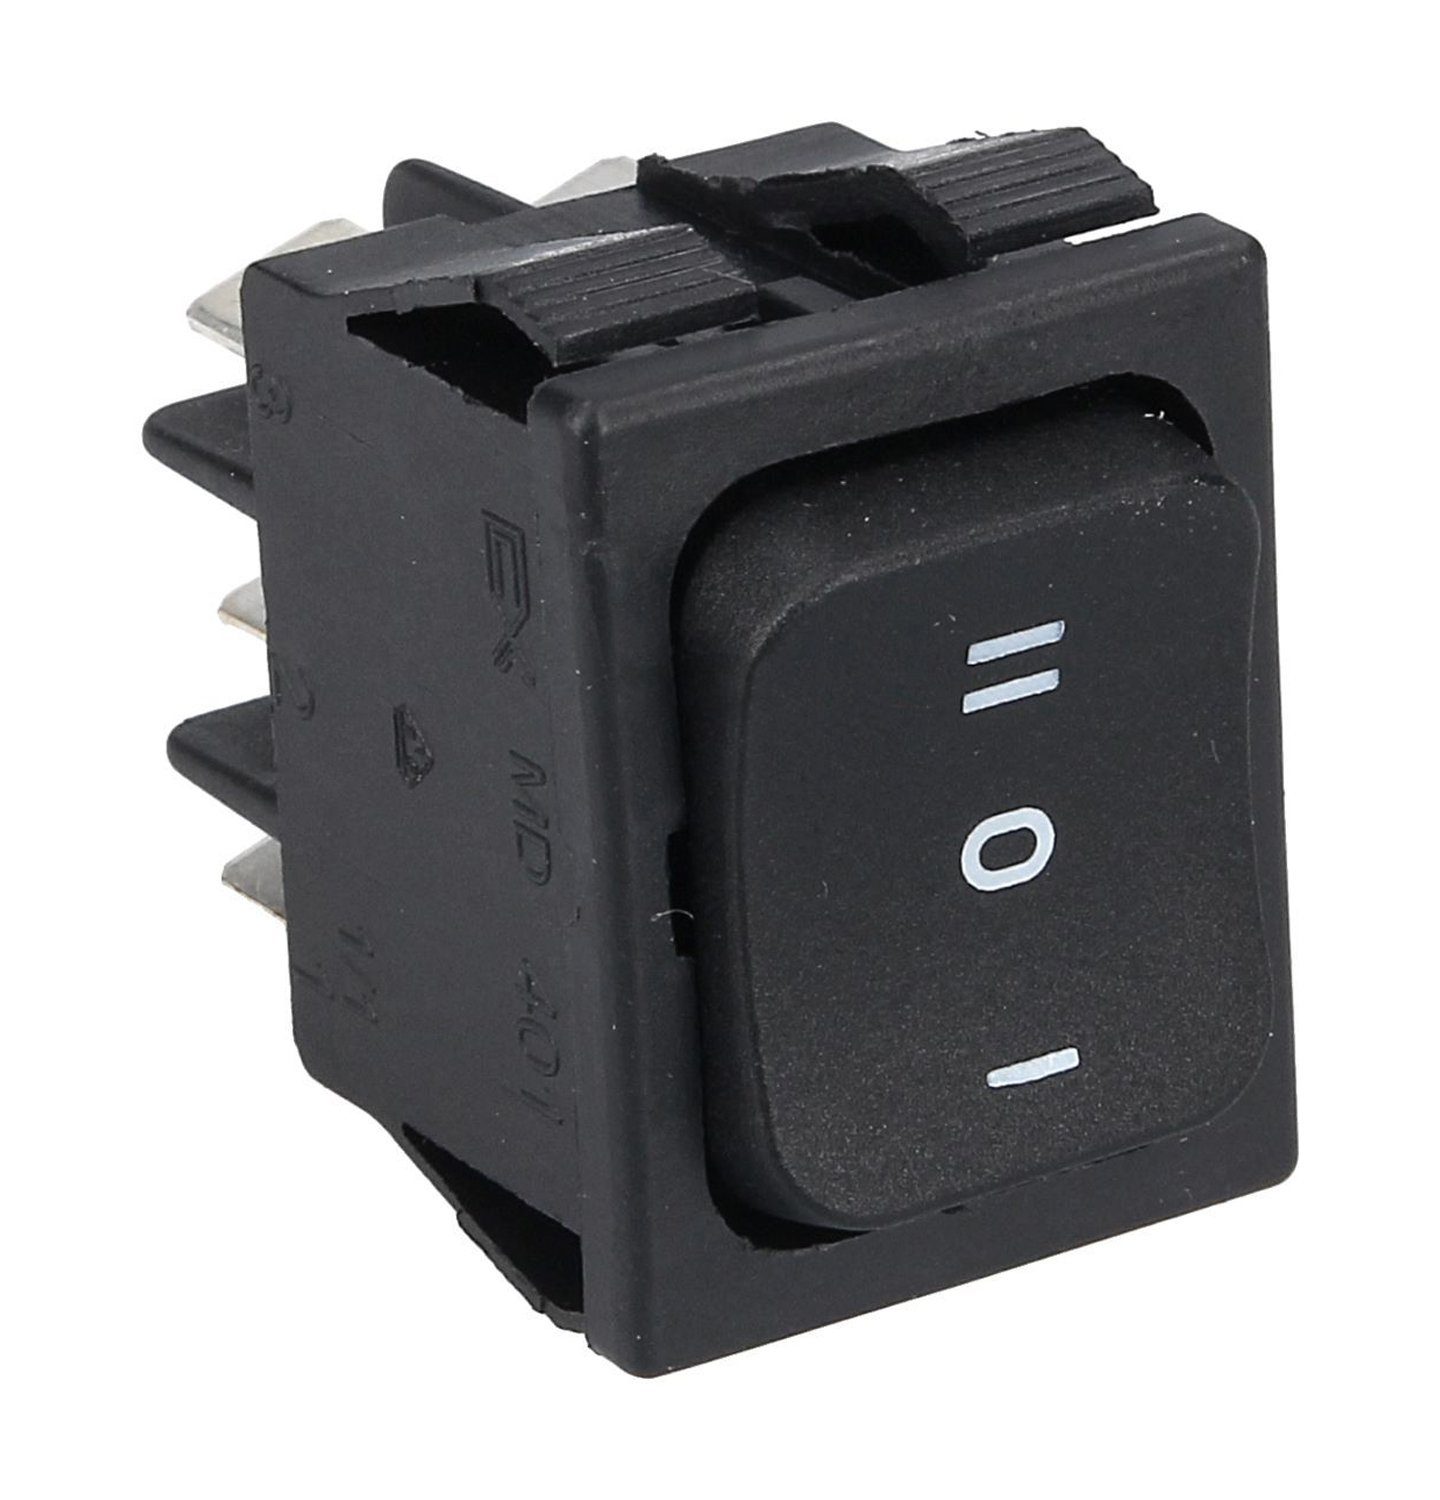 1 2 - Wippschalter, Schalter schwarz Schaltfolge 32x22mm 0 für VIOKS Kleingeräte Einbaumaß -